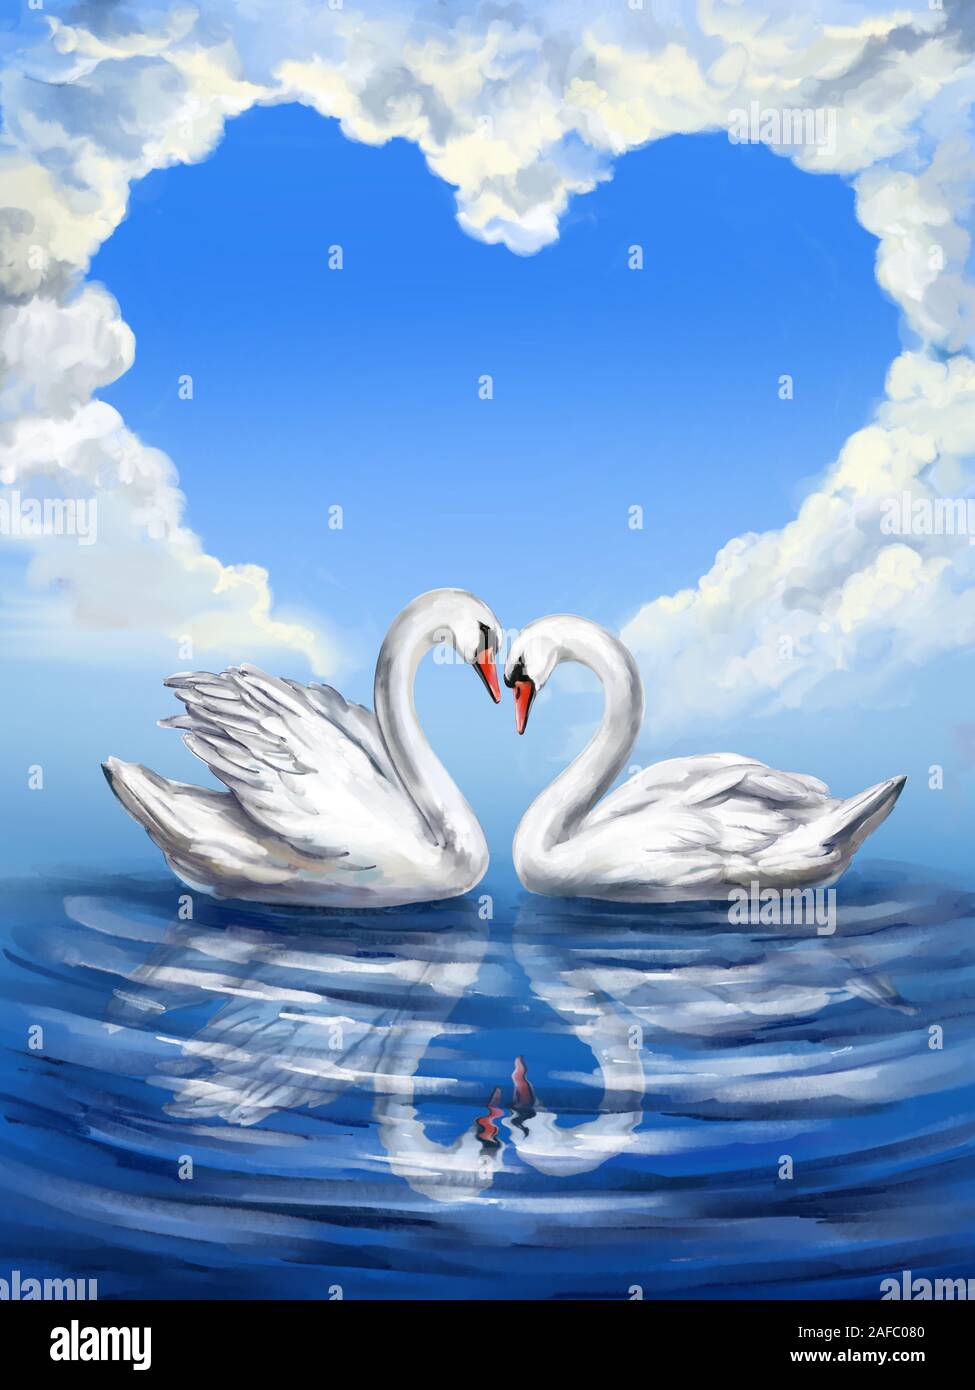 Deux oiseaux Cygne blanc sur un étang ensemble sur le fond du ciel avec des nuages en forme de coeur, symbole de l'amour, la Saint-Valentin, carte weddin Banque D'Images